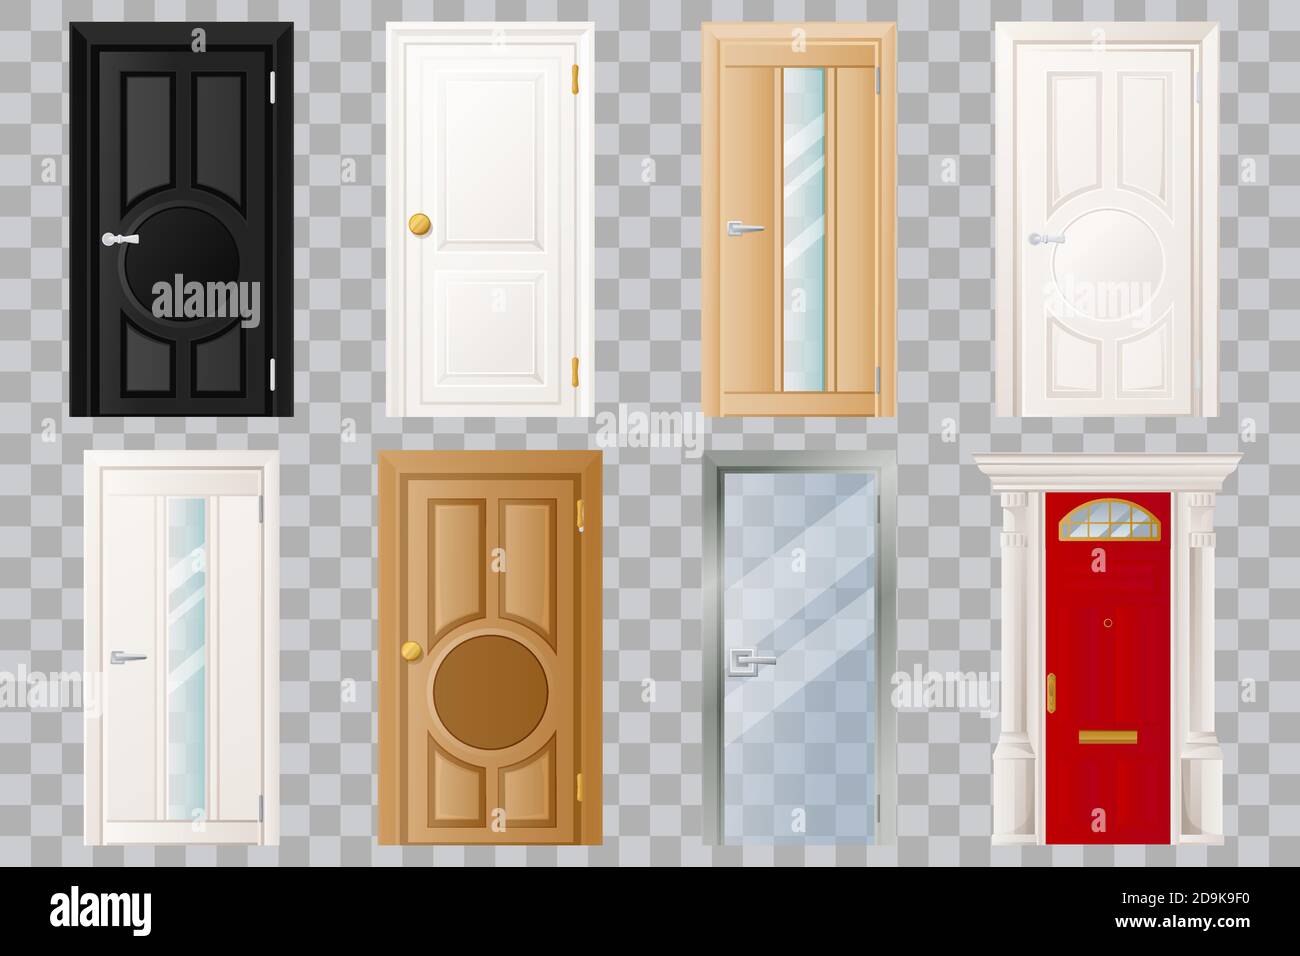 Geschlossene Türen Set, isoliert auf transparentem Hintergrund. Klassische Holztür, weiß, schwarz und Glas. Modernes Haus oder Zimmer Eingang und Ausgang Design elemen Stock Vektor